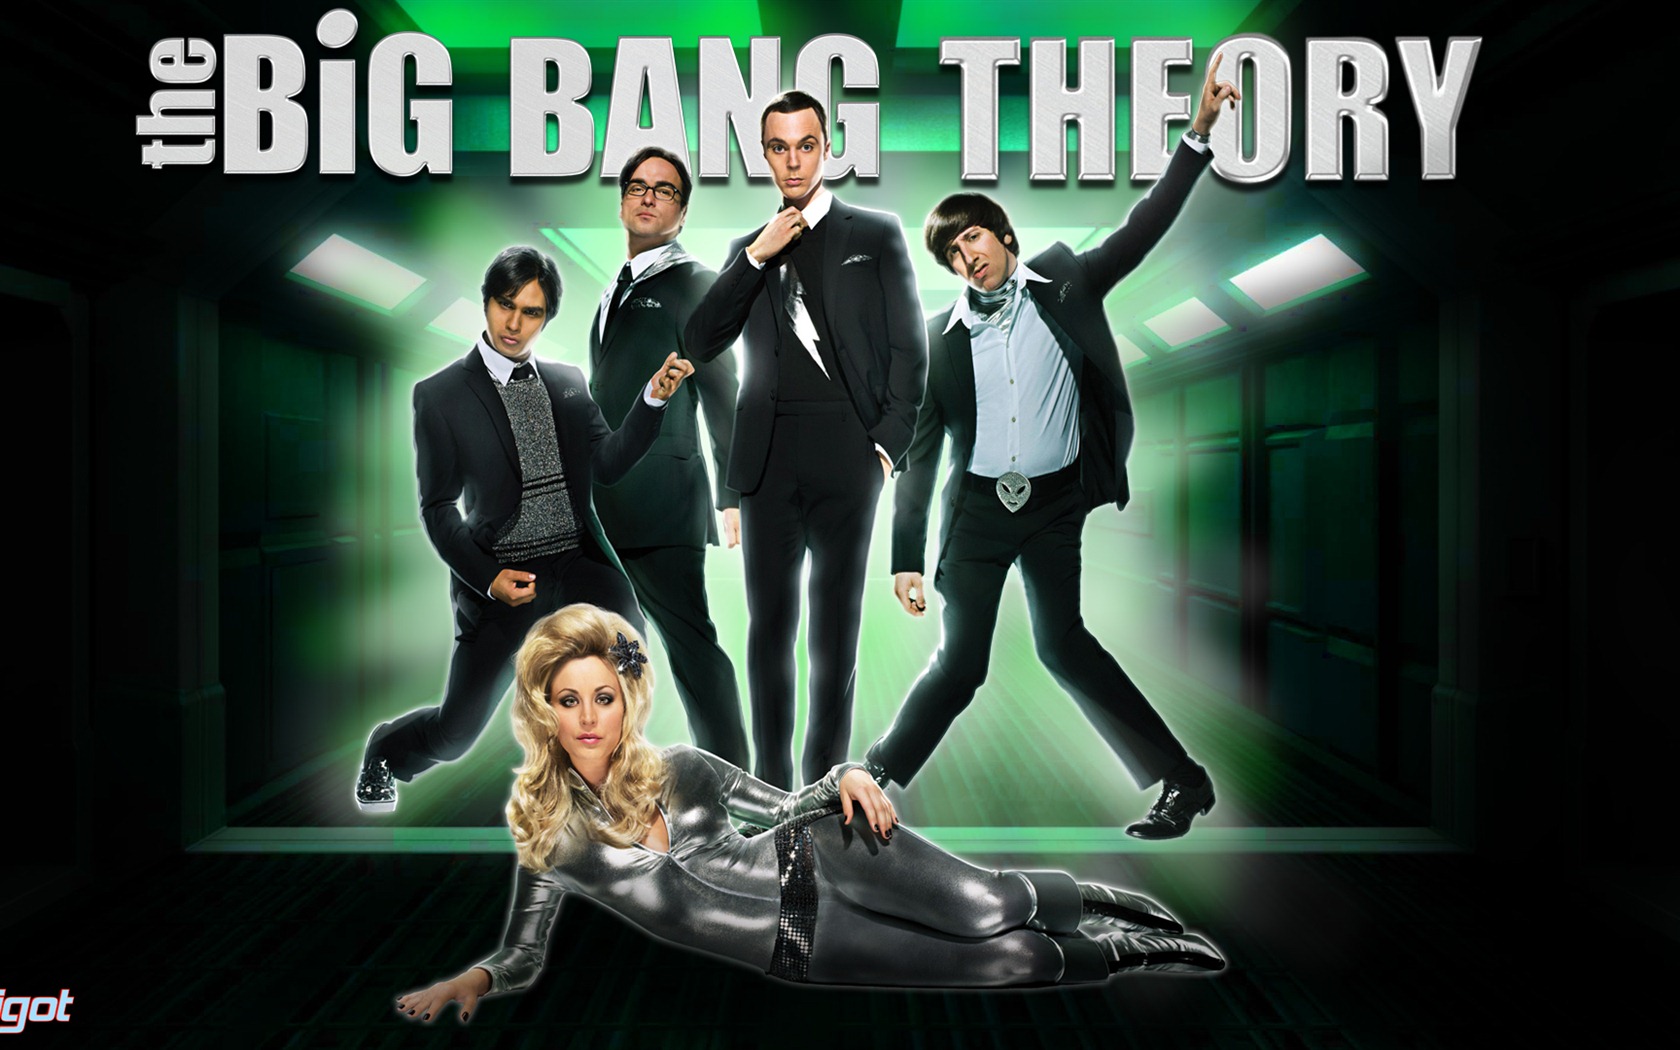 The Big Bang Theory 生活大爆炸 电视剧高清壁纸6 - 1680x1050